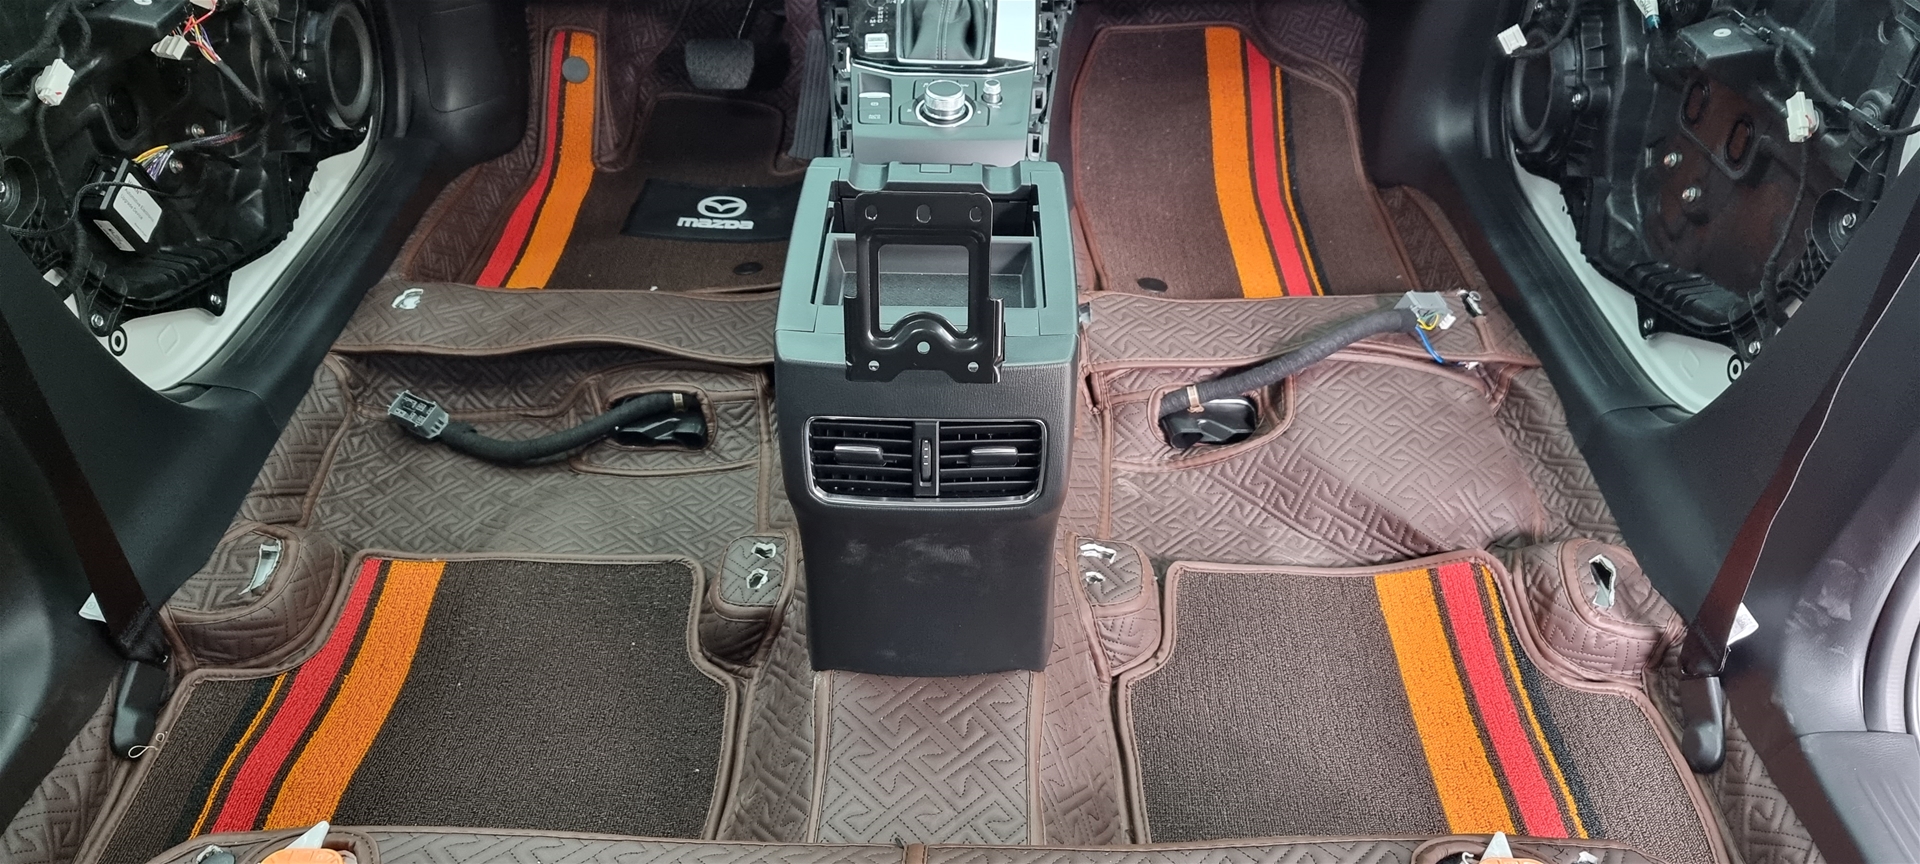 Đổi màu nội thất Mazda CX5 cam Hermes - Hình 3